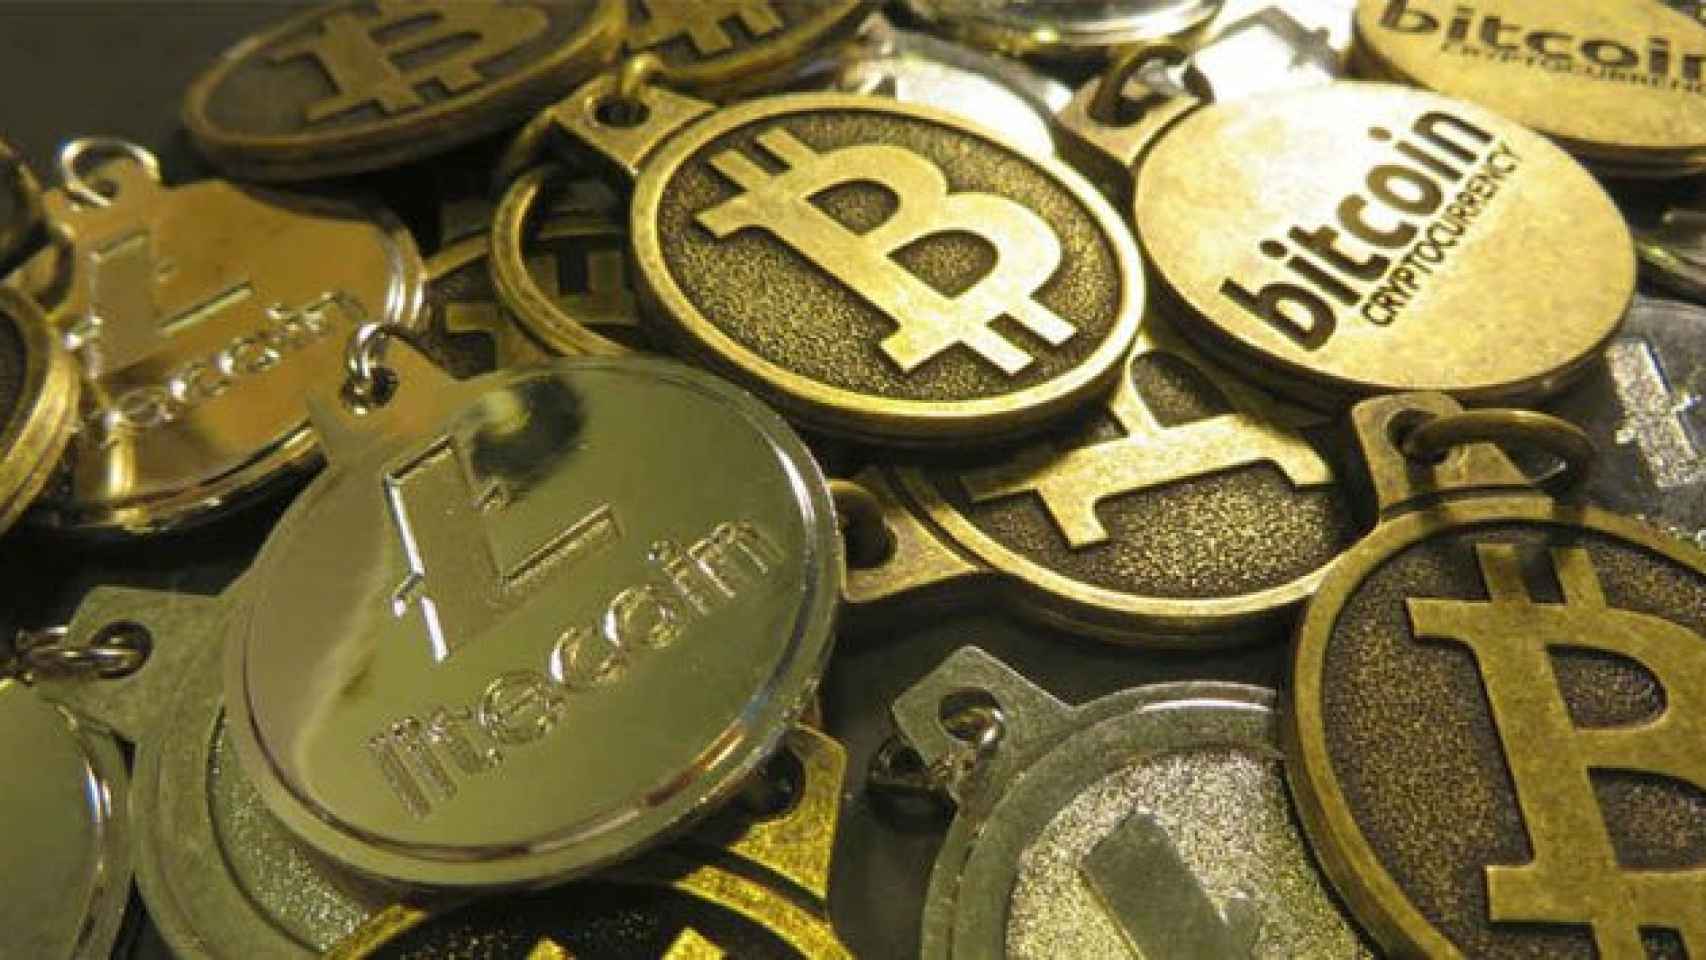 Imagen de una moneda virtual bitcoin como las que han robado / CG